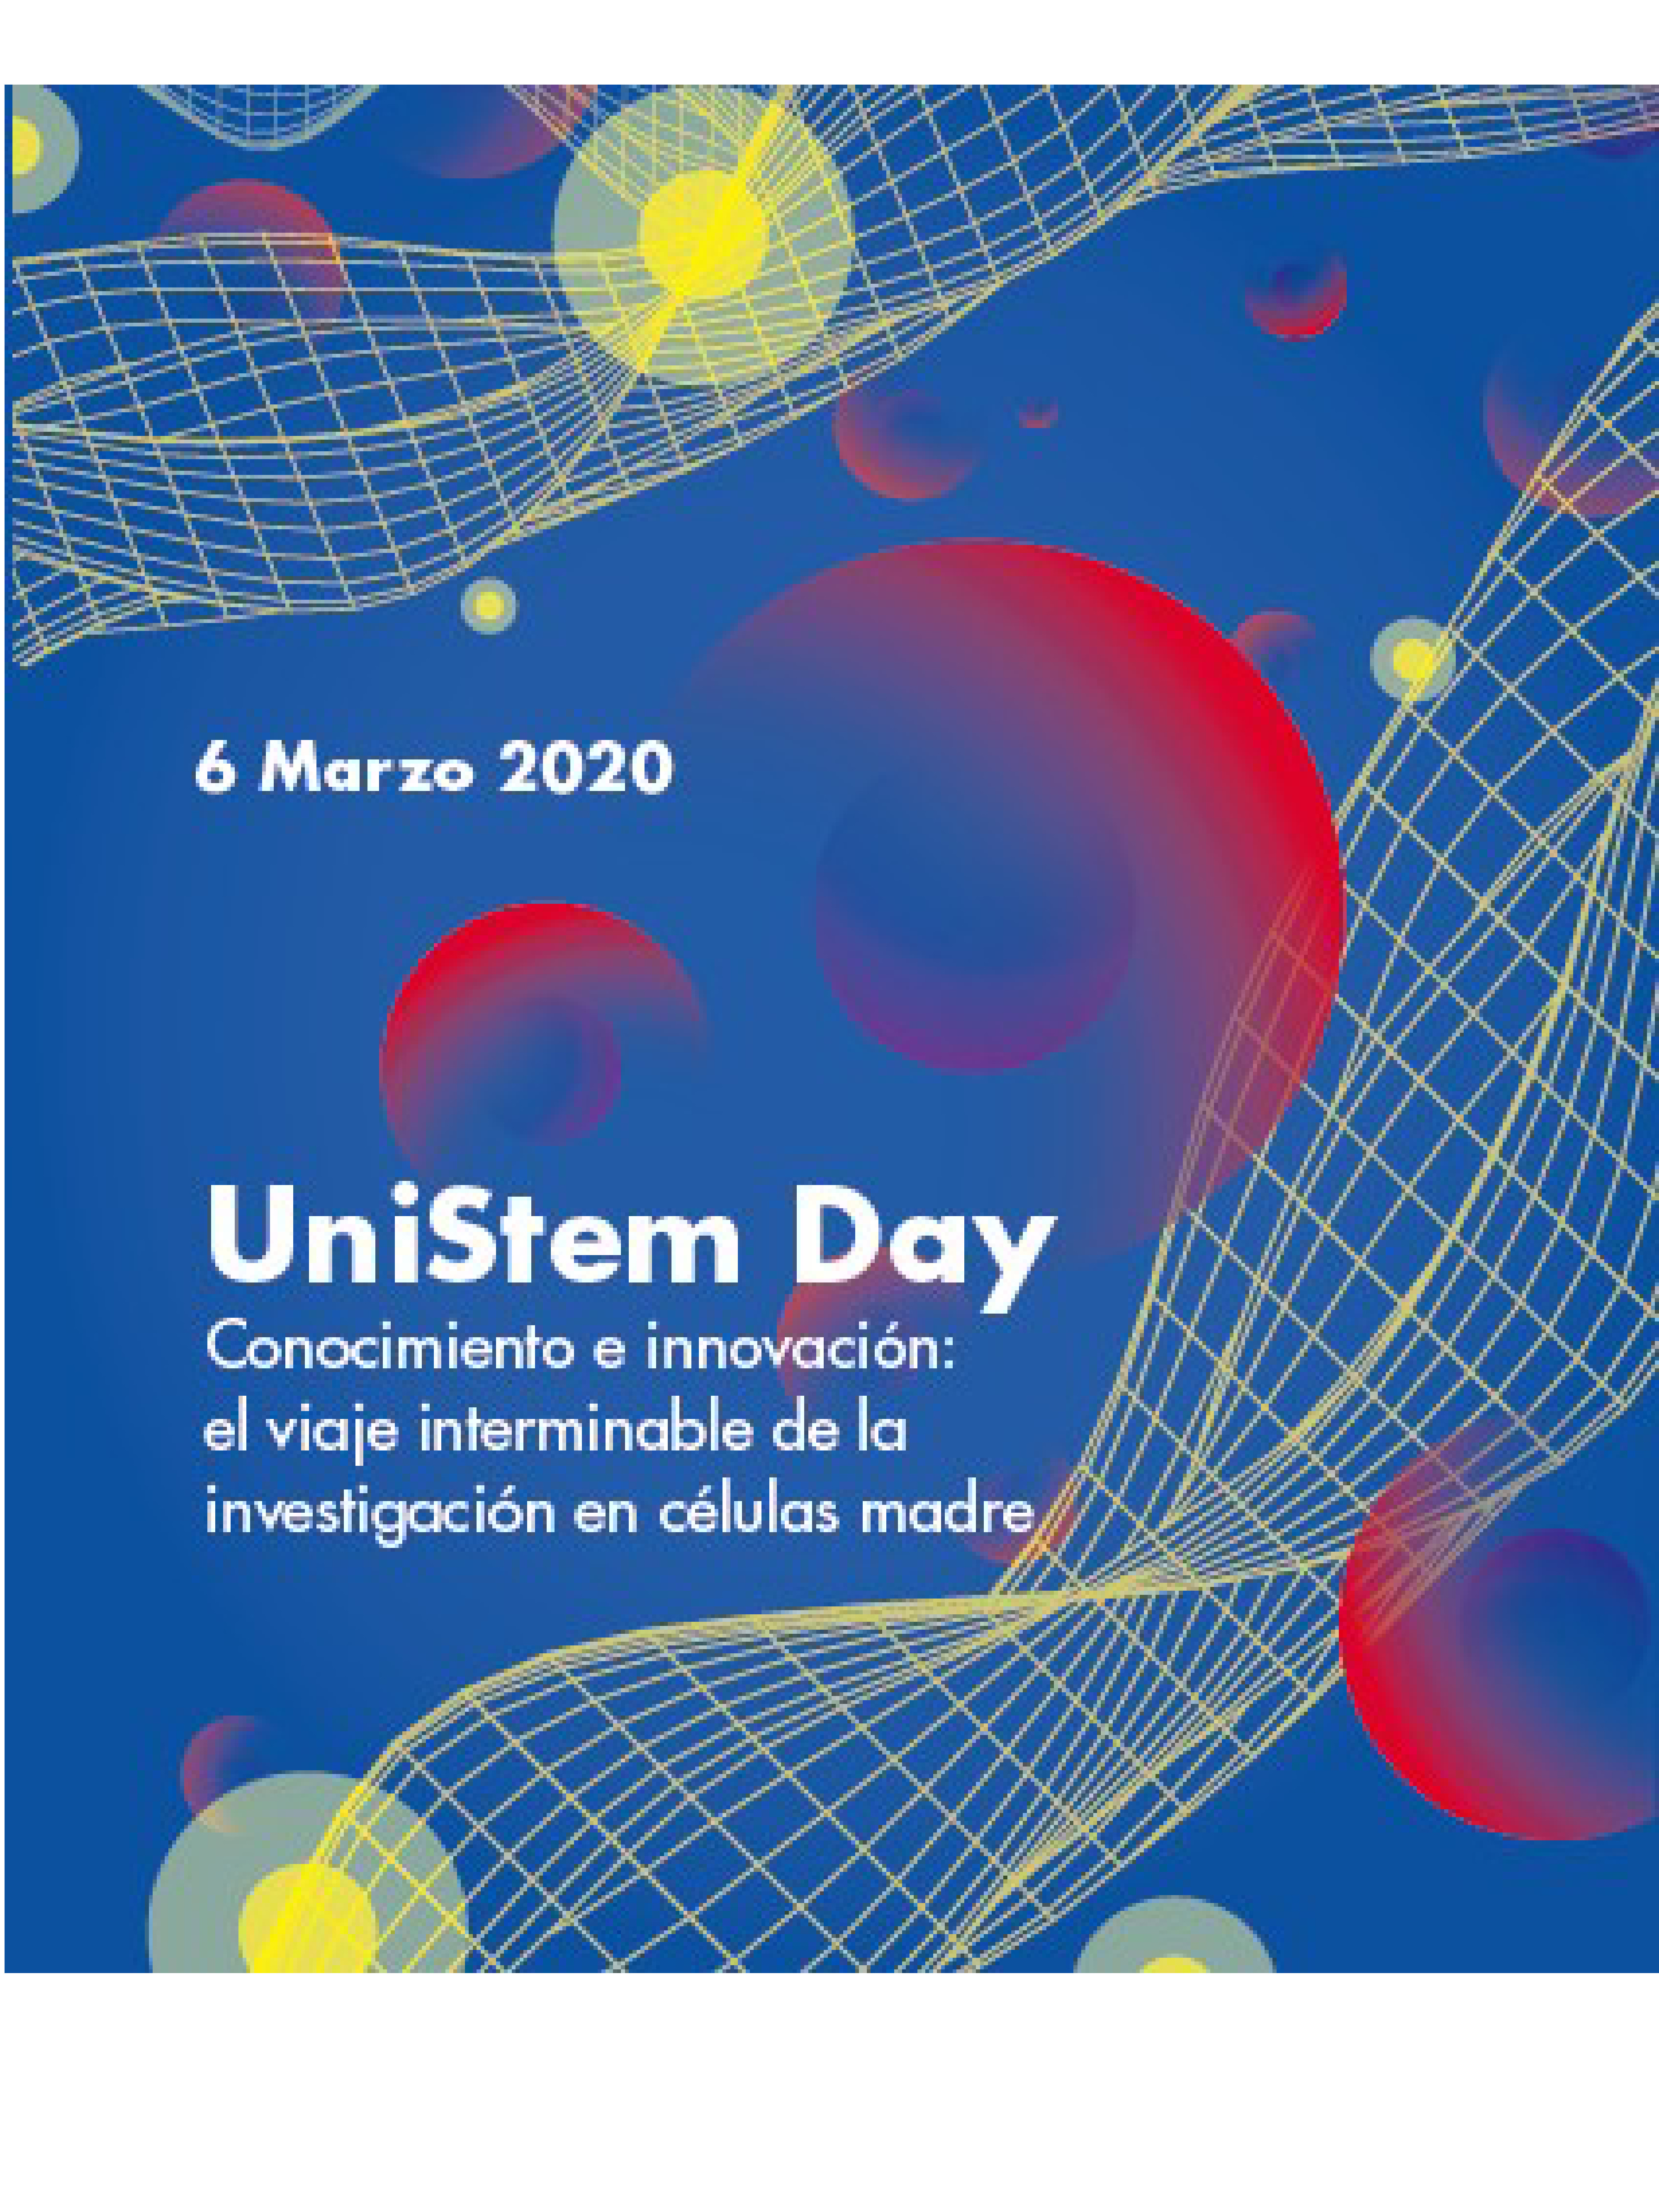 UniStem Day 2020 reunirá a 101 universidades e institutos de 13 países